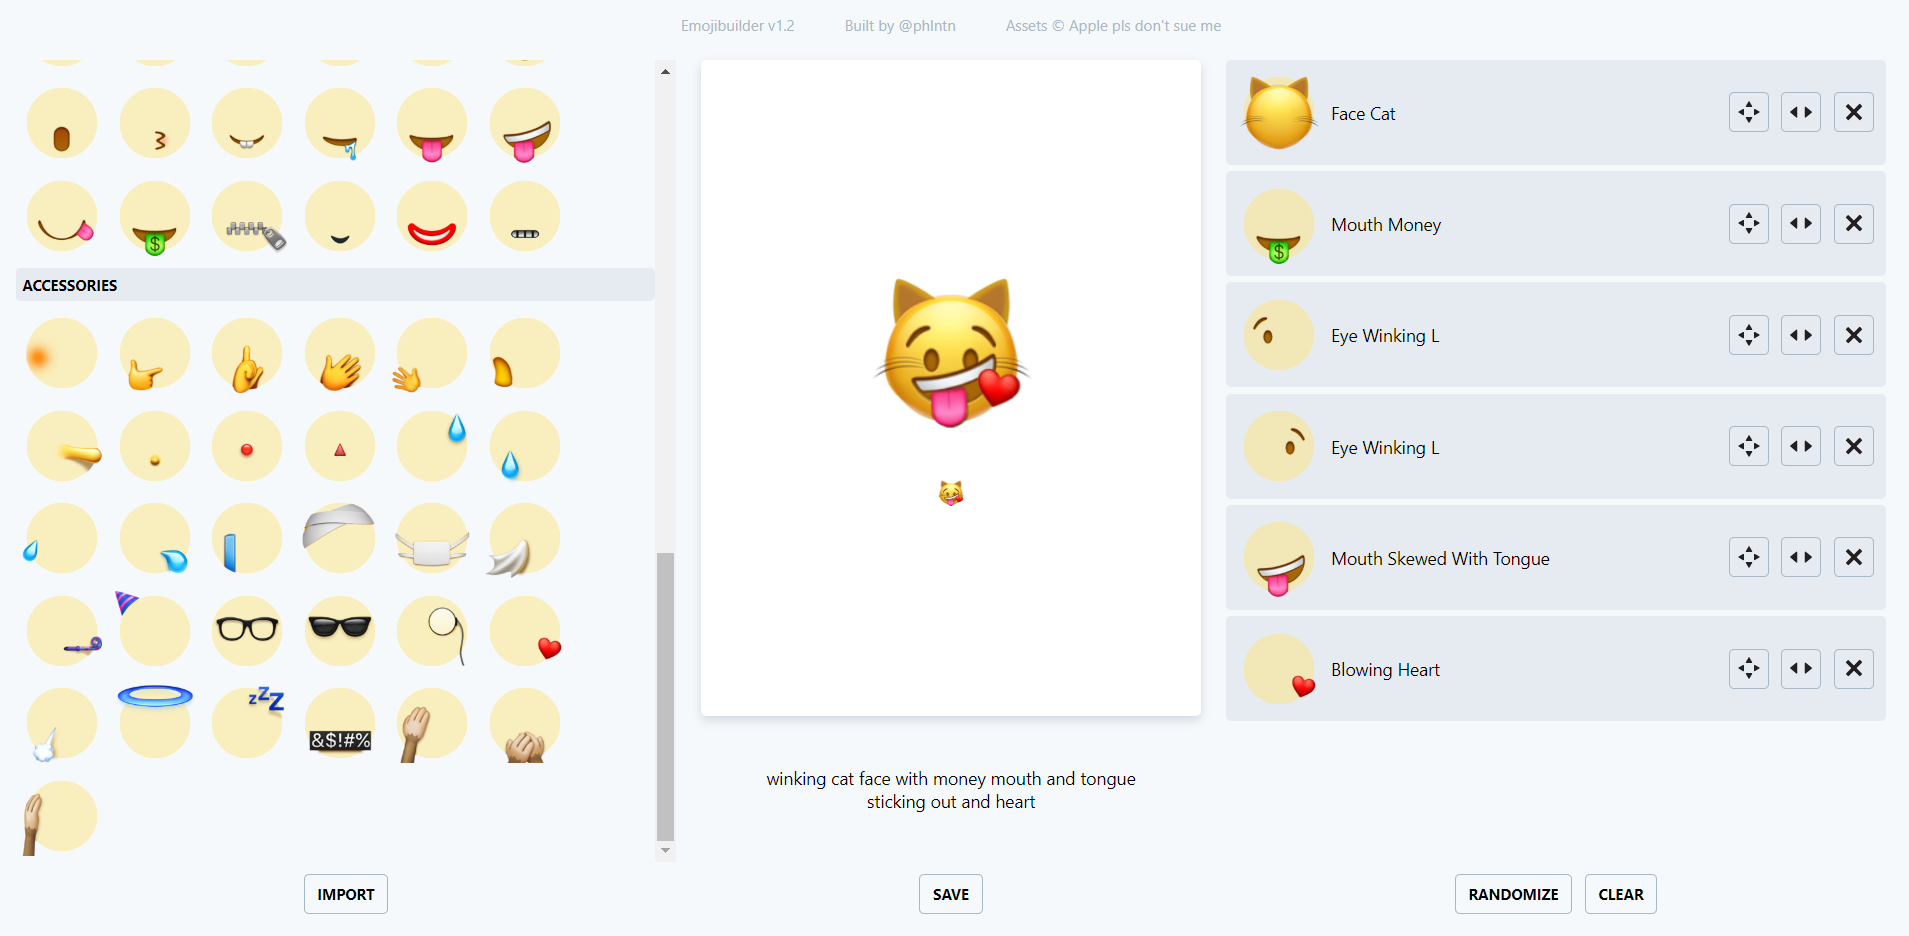 emoji - 發現一個表情符號生成網站 Emoji010